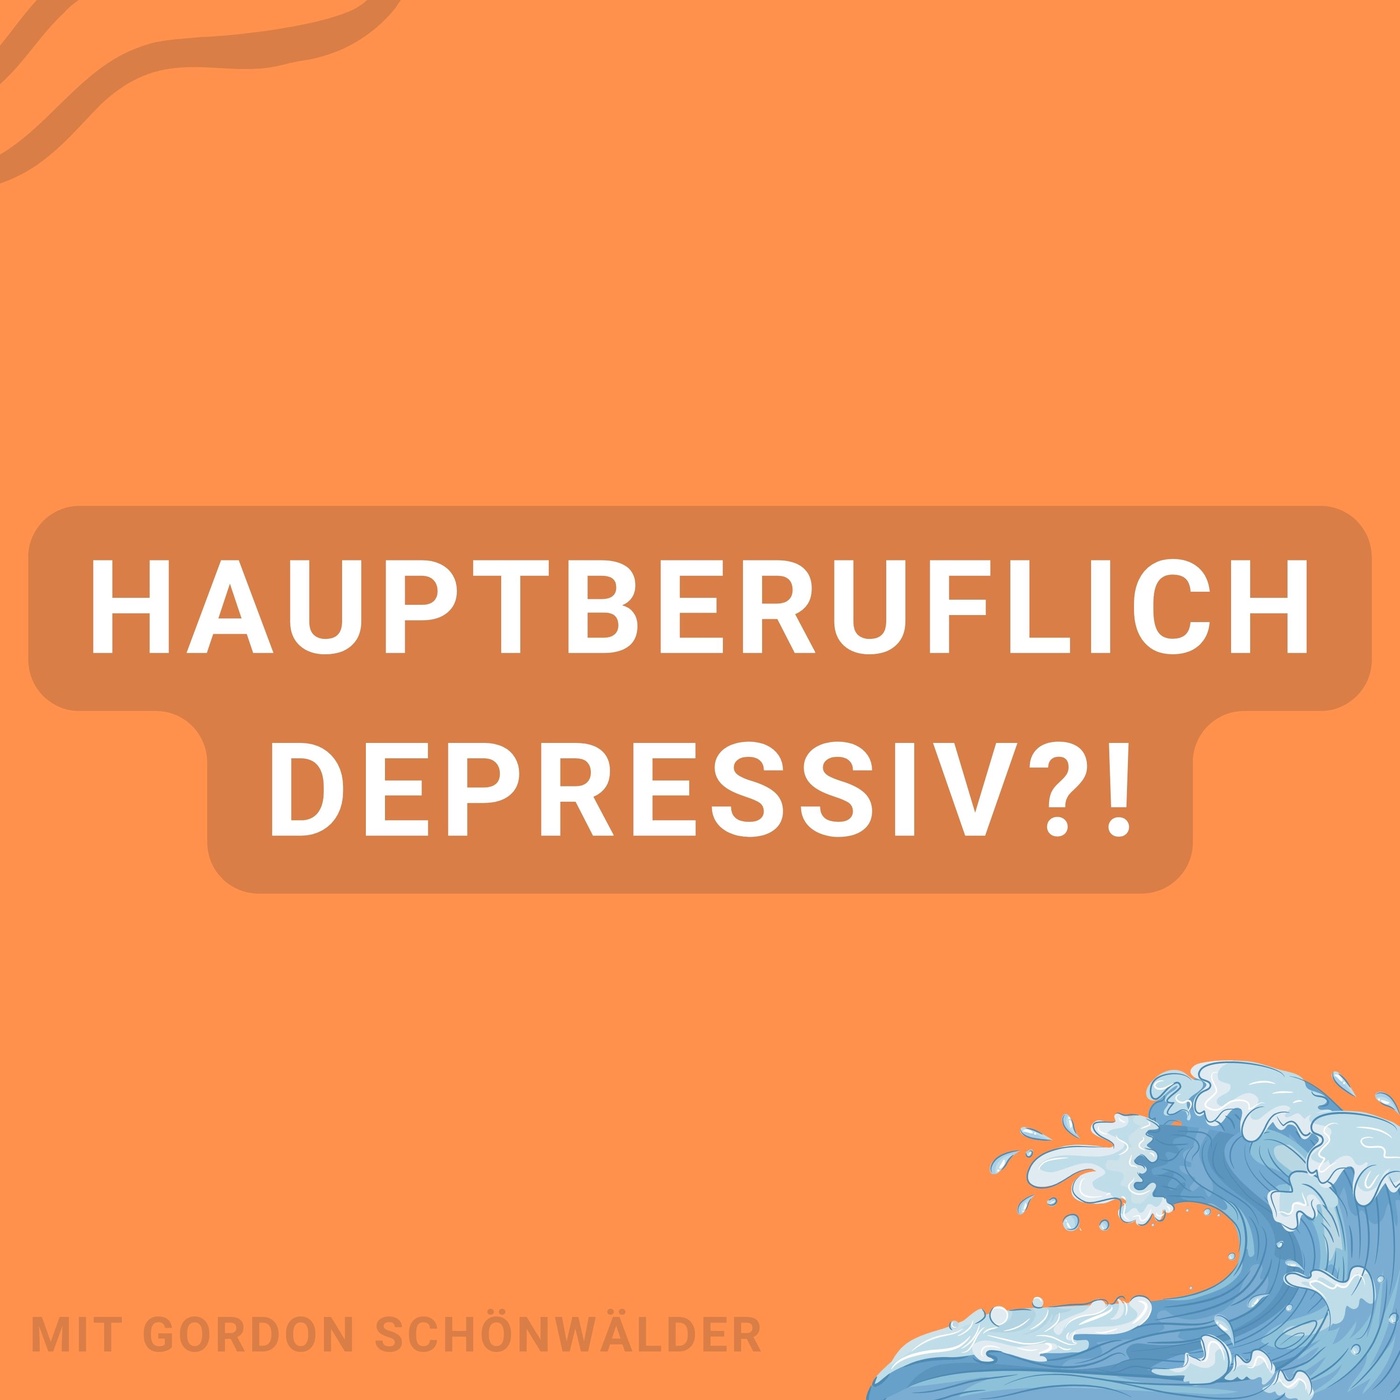 Hauptberuflich depressiv?! - Der Podcast über Depression, Mental Health und Co.